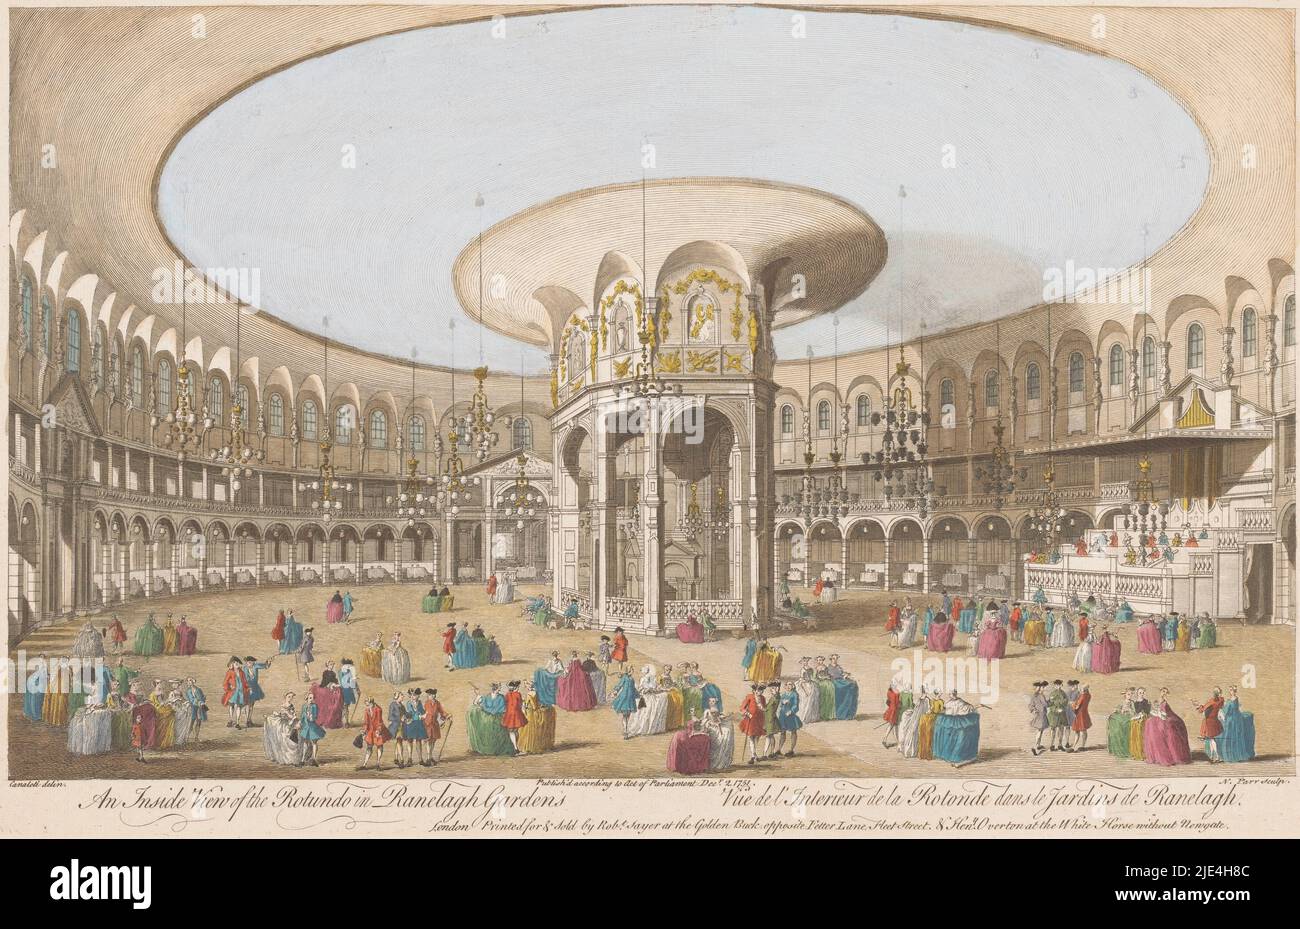 Vue de l'intérieur de la rotonde dans les jardins de Ranelagh, Londres, Robert Sayer, après Canaletto, 1751, Numéroté en haut à droite: 2., éditeur: Robert Sayer, (mentionné sur l'objet), éditeur: Henry Overton (II), (mentionné sur l'objet), imprimeur: Nathaniel Parr, (mentionné sur l'objet), Londres, 2-Dec-1751, papier, gravure, brosse, h 258 mm × l 402 mm Banque D'Images